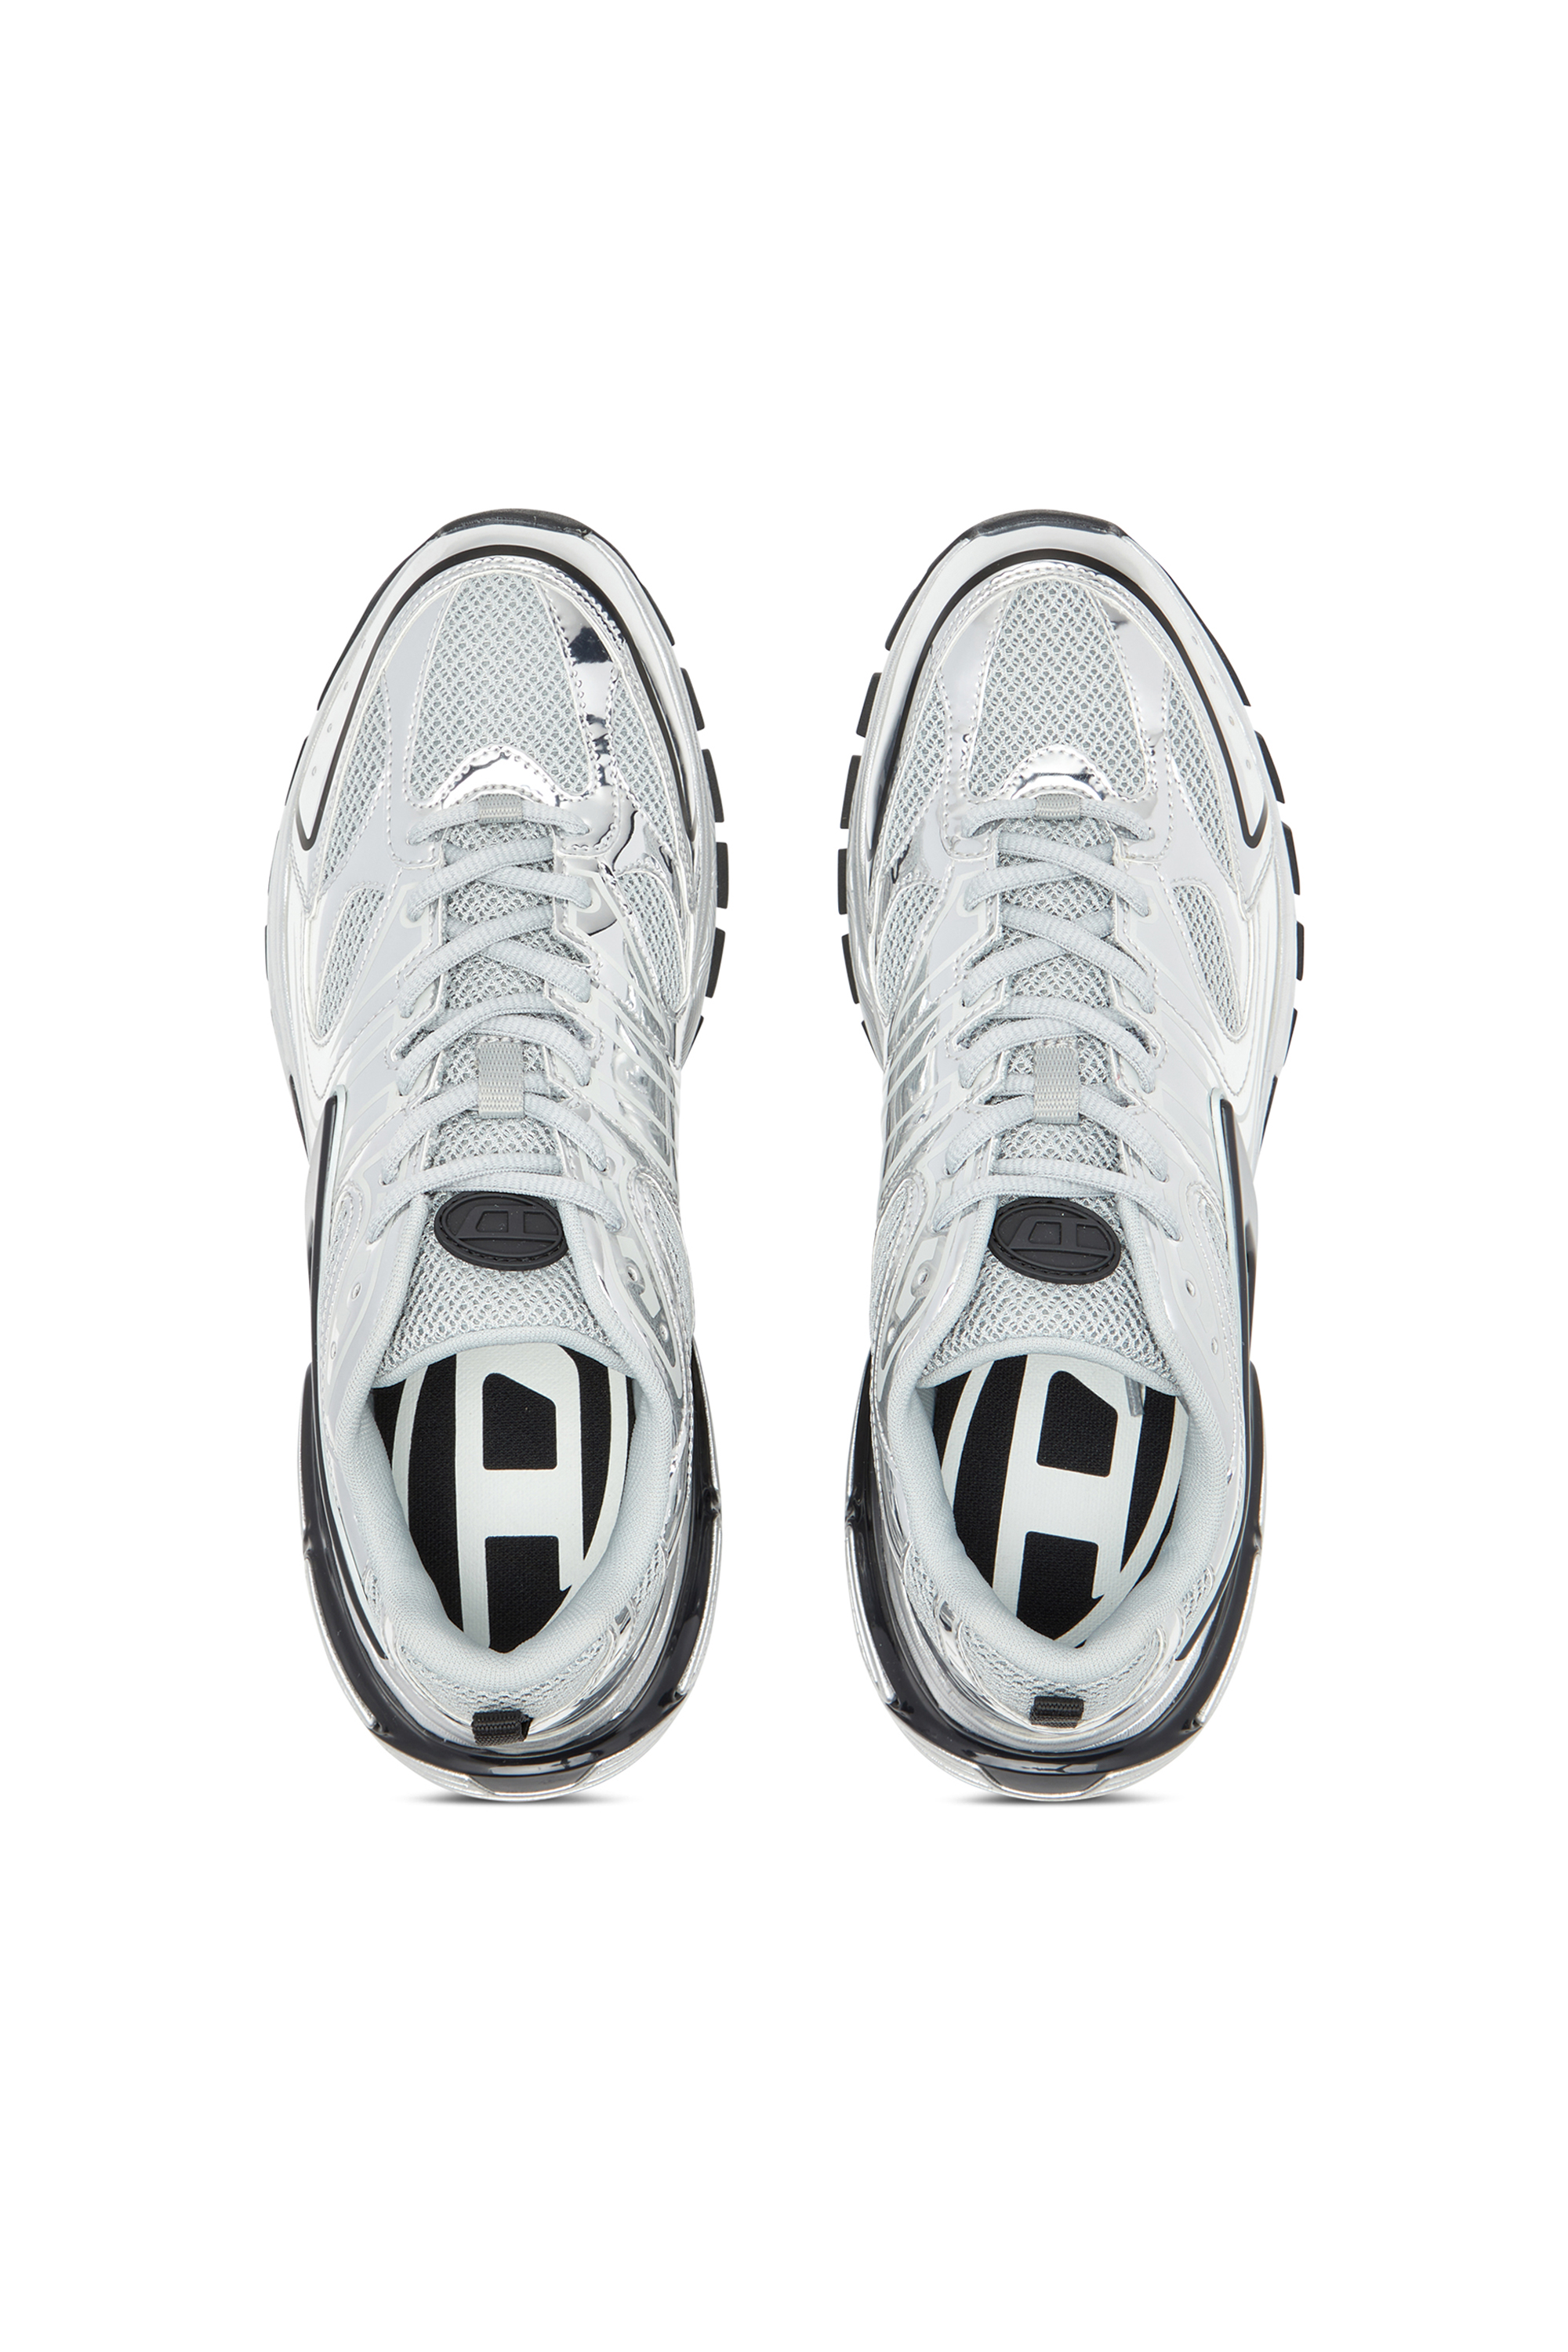 Diesel - S-SERENDIPITY PRO-X1, Herren S-Serendipity-Sneakers aus Mesh mit Metallic-Overlays in Bunt - Image 6